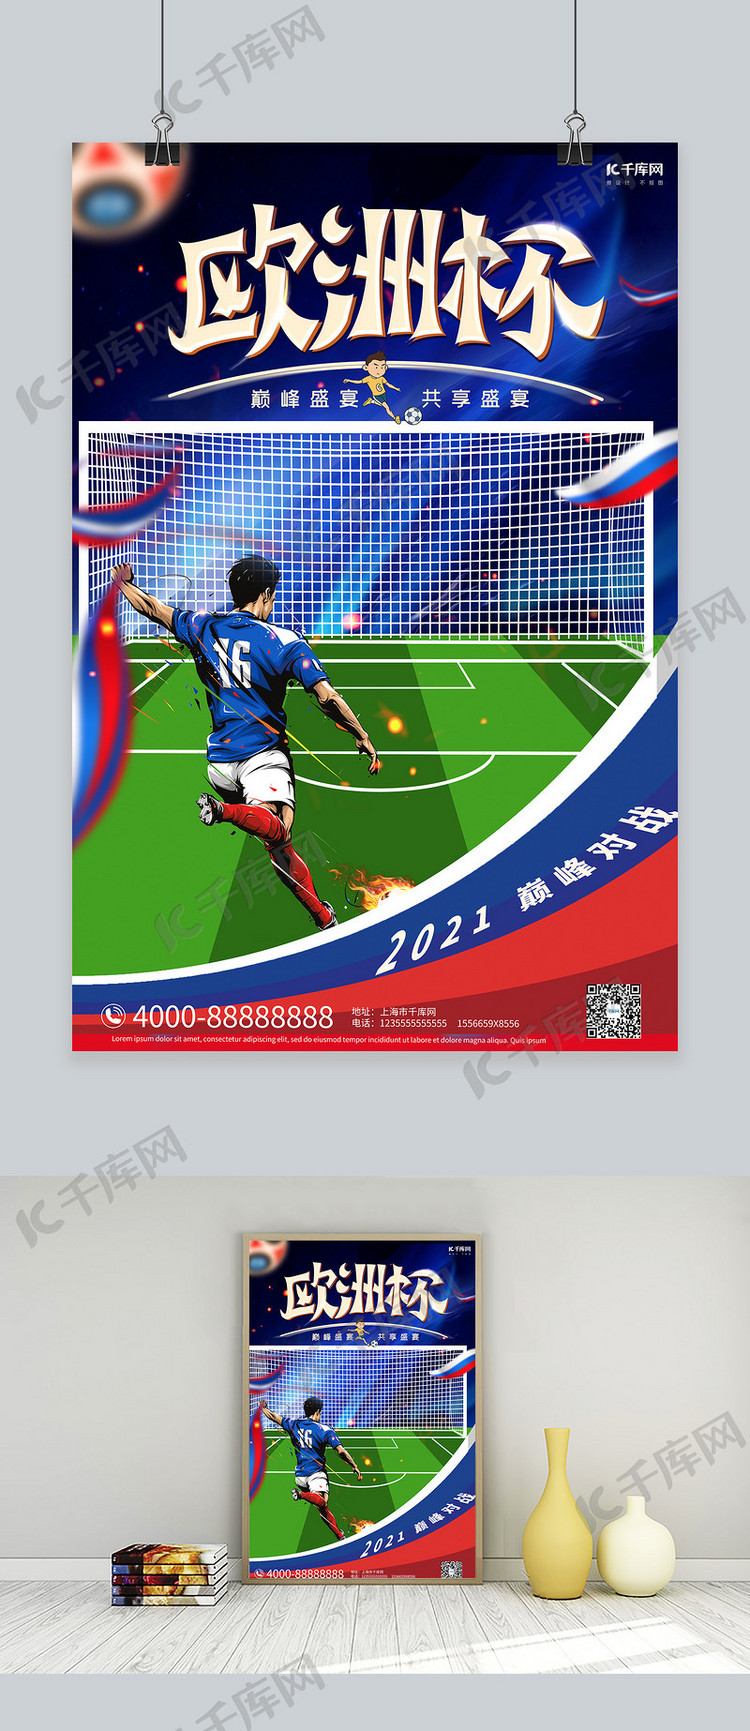 欧洲杯足球赛蓝色插画海报